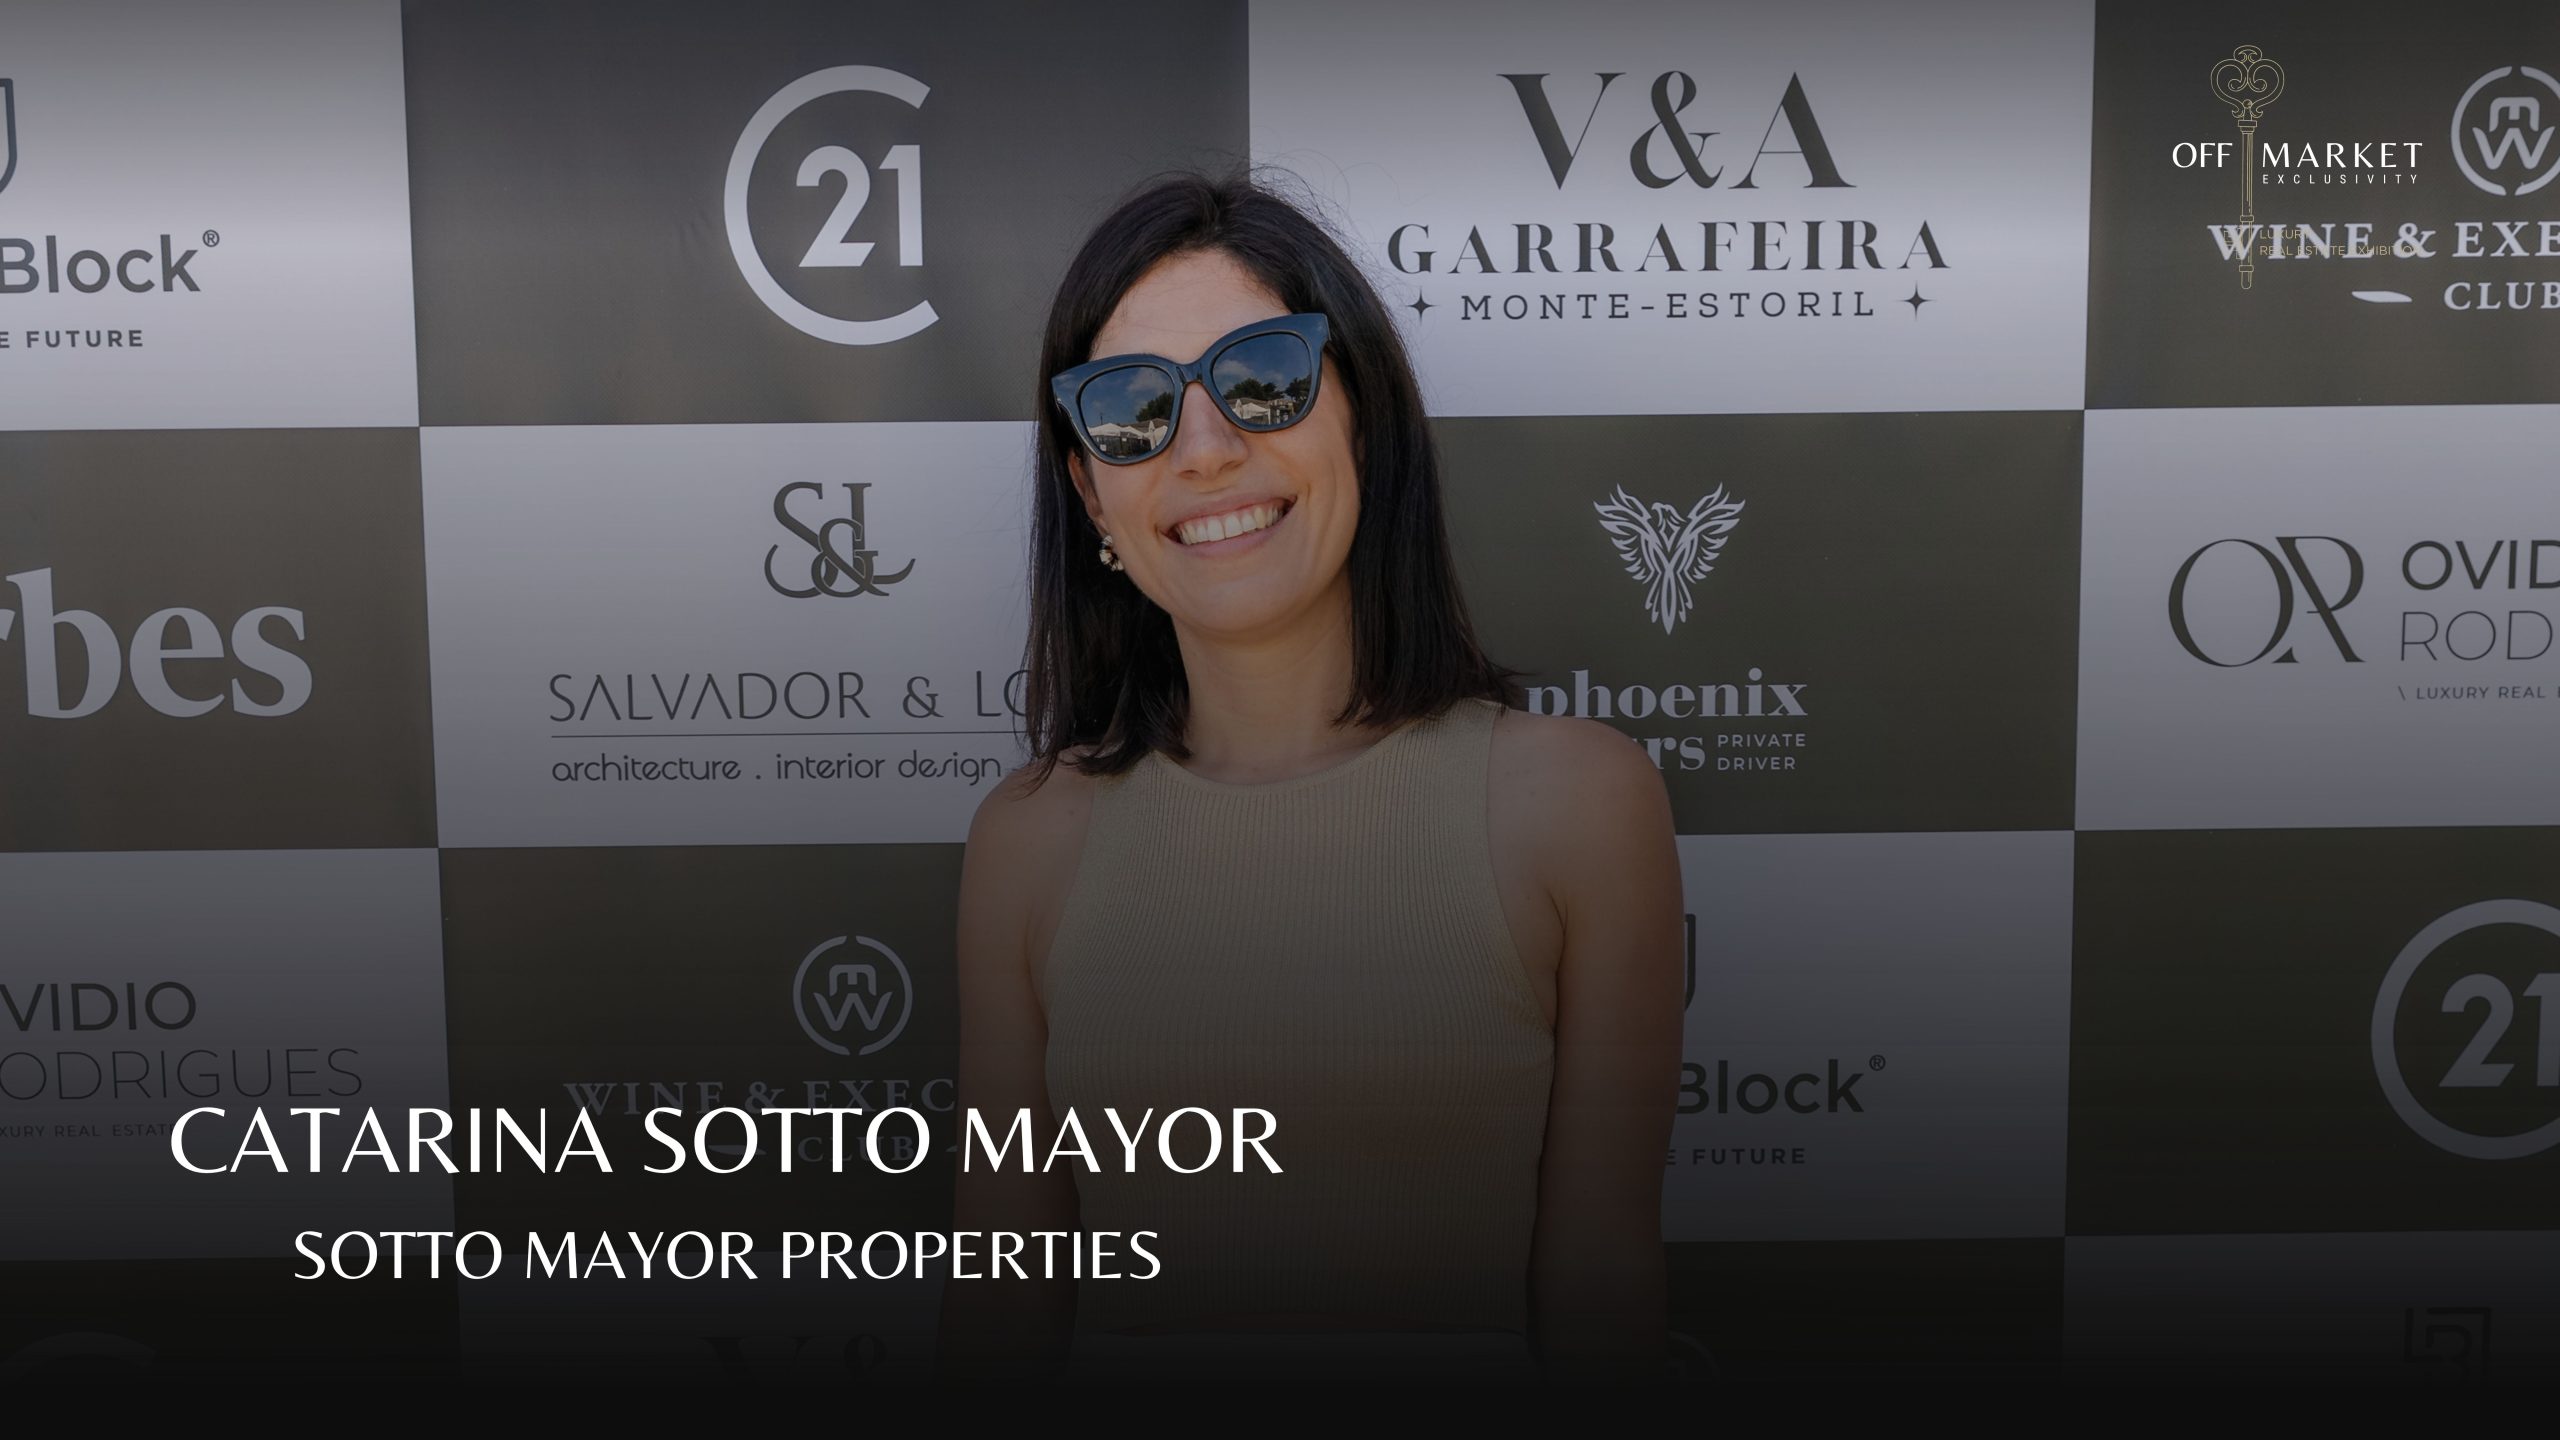 Off Market 2023 – Catarina Sotto Mayor